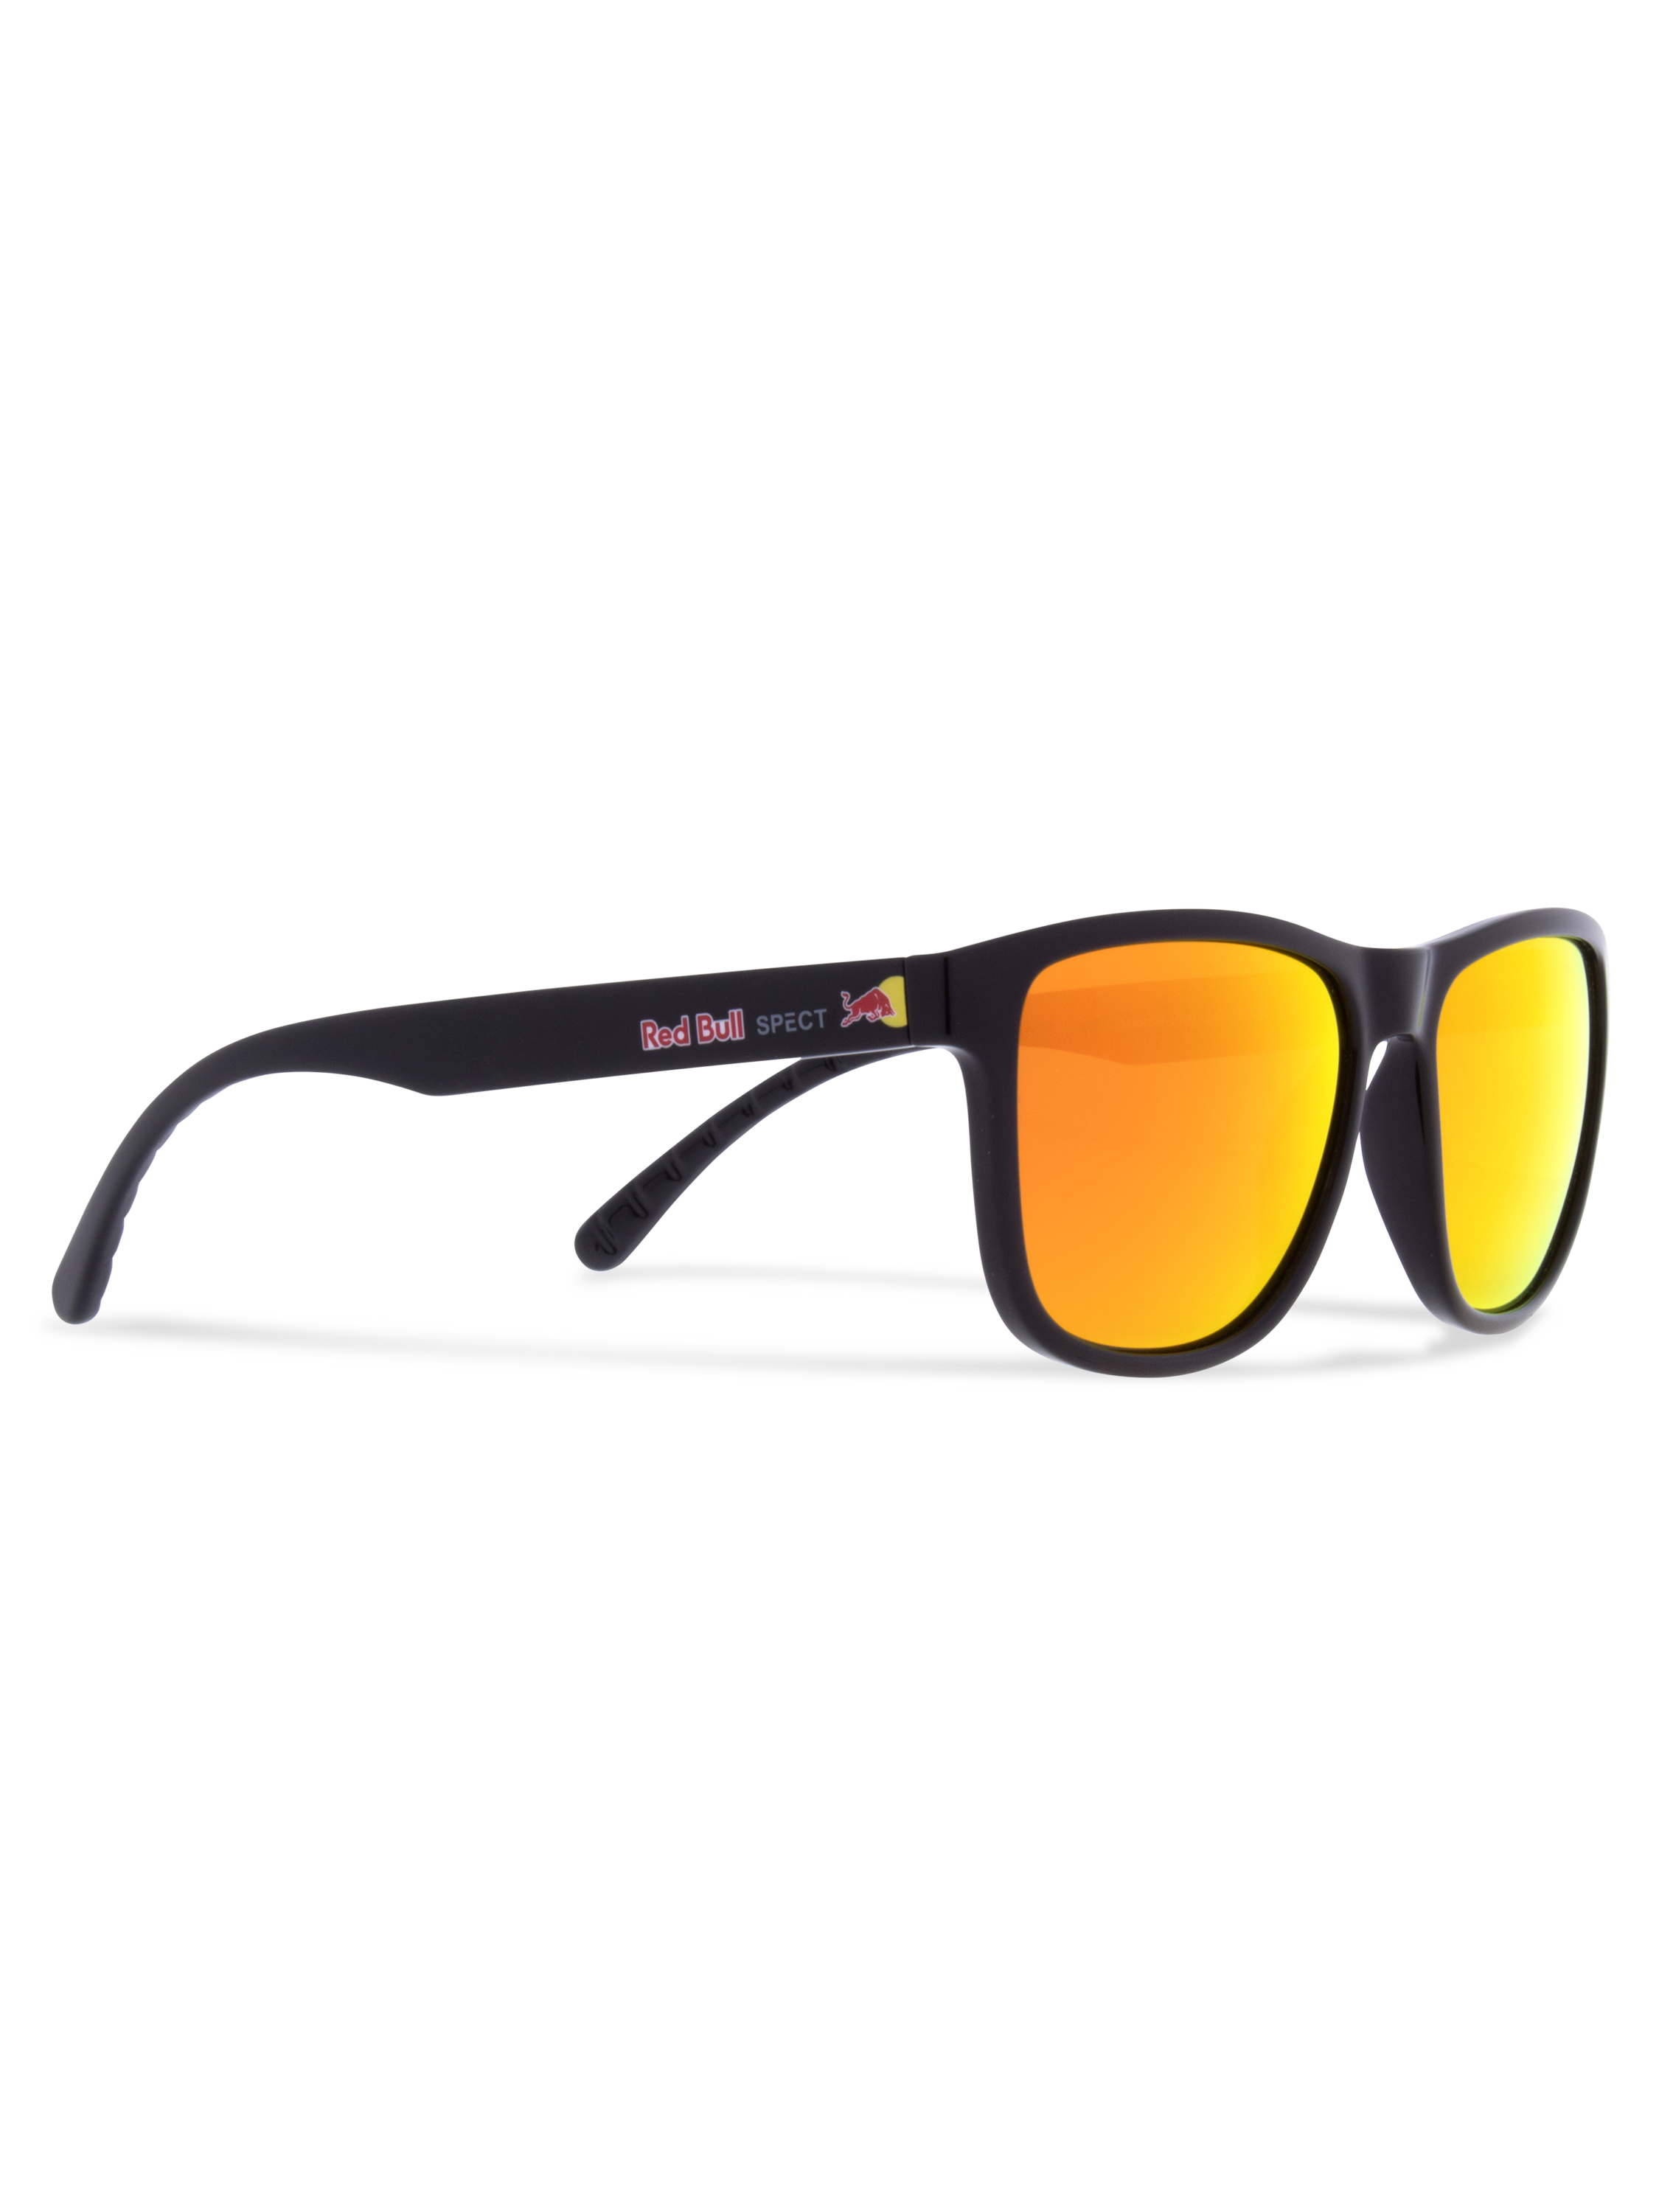 Red Bull SPECT MARSH-002P Sunglasses